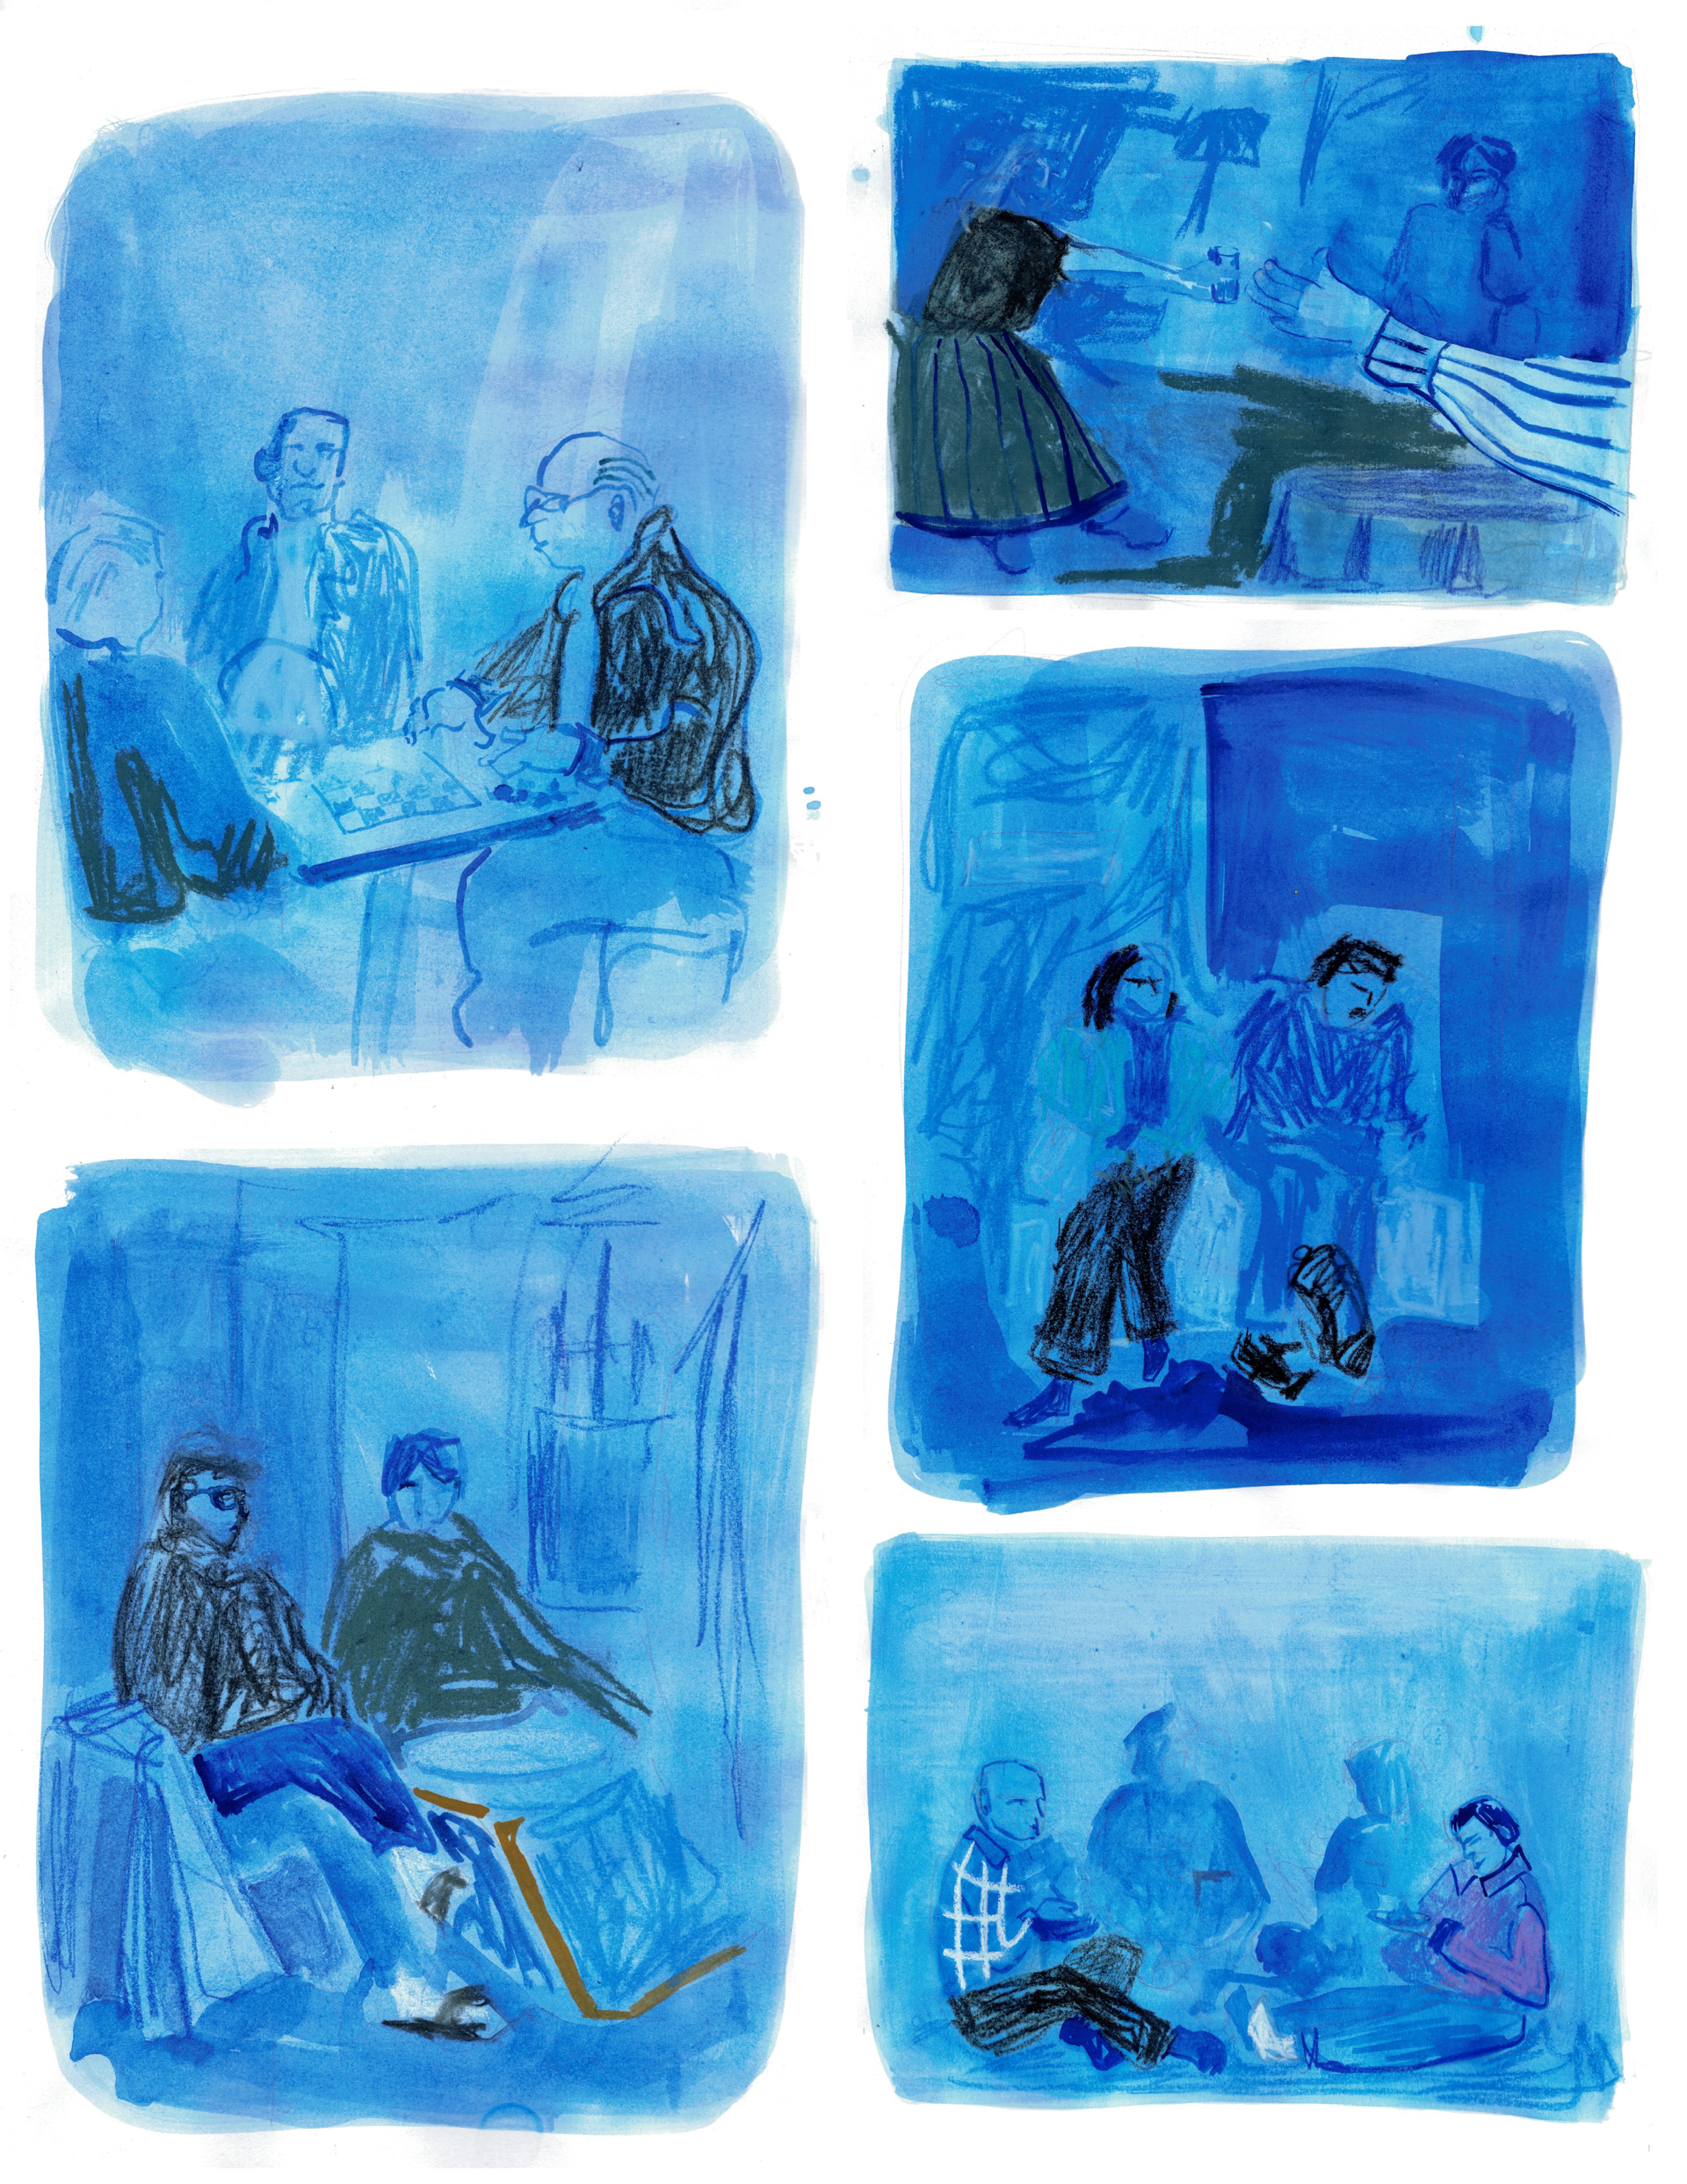 Kompilacja pięciu rysunków ze szkicownika. W błękitnych kadrach widnieją sceny z wnętrz mieszkalnych, lokali, których bohaterami są ludzie i interakcje między nimi. Rysunki wykonane są umowną, swobodną kreską oraz plamą, mają charakter notatek wykonywanych w plenerze.